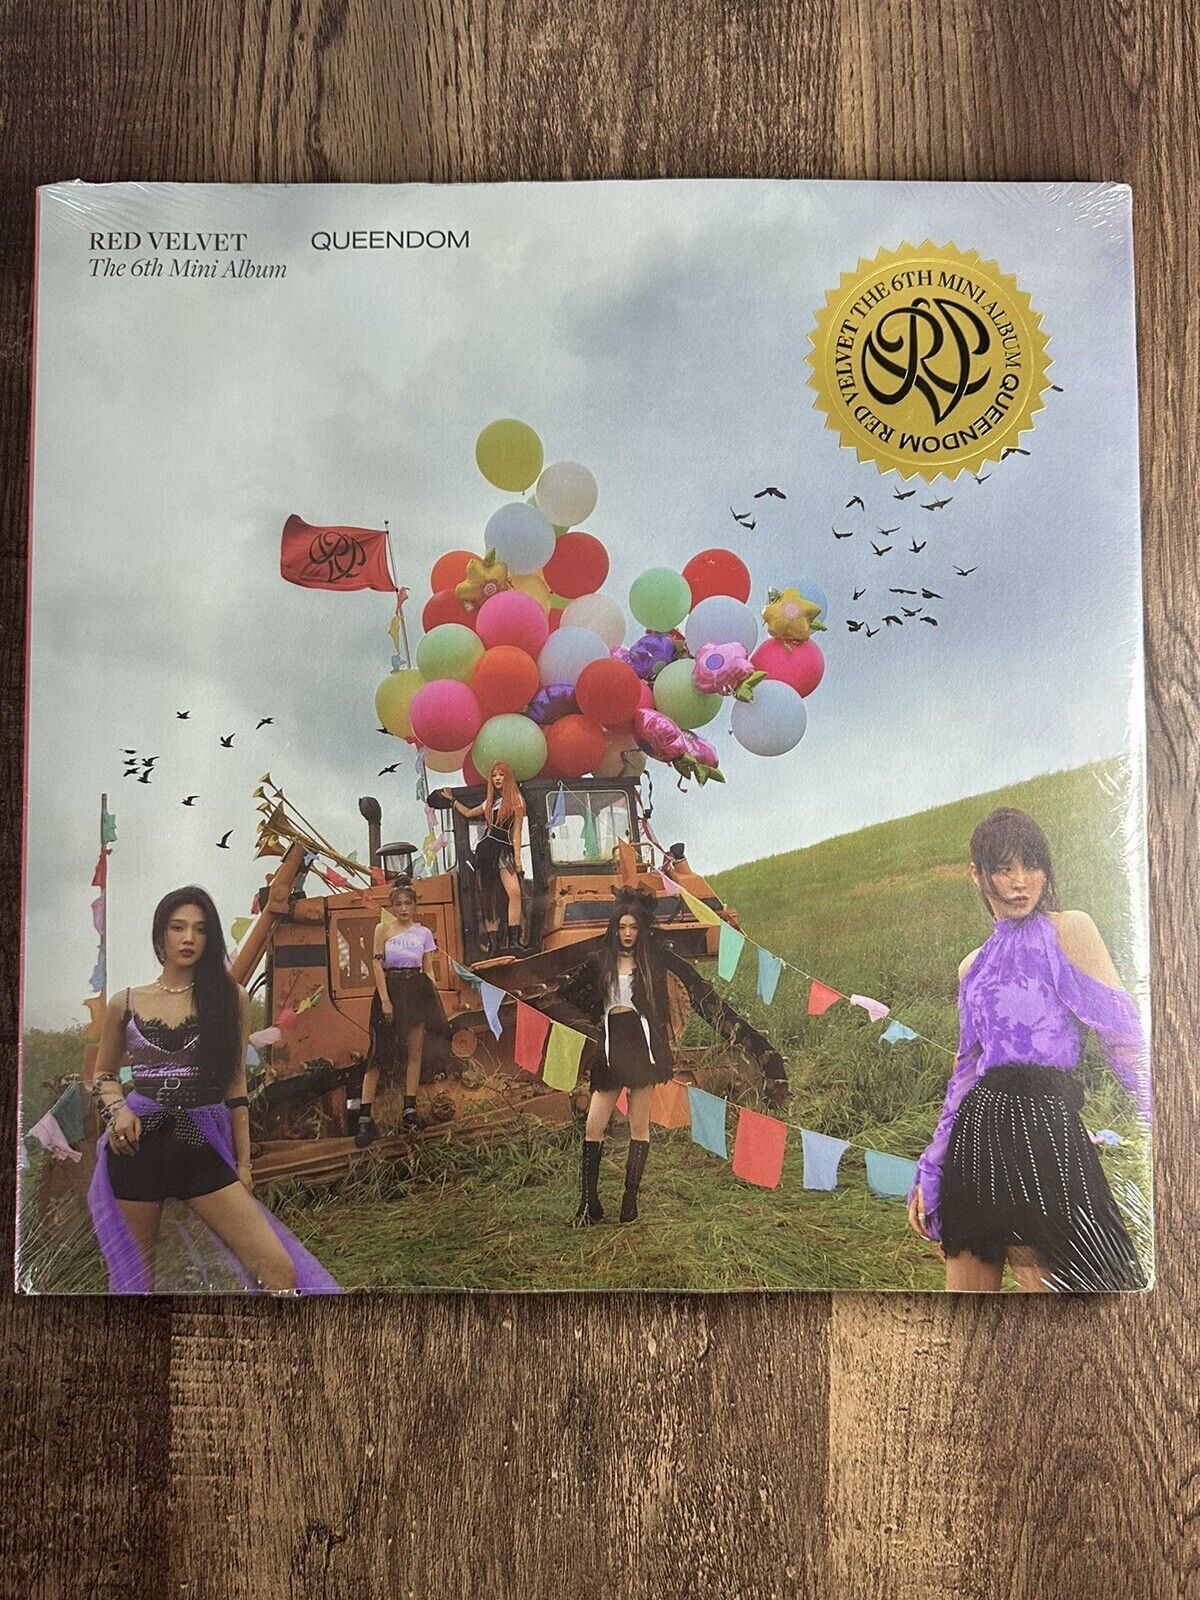 RED VELVET 6th Mini Album [Queendom] Queens B Ver. CD+84p P.Book+3p Card+B.Mark